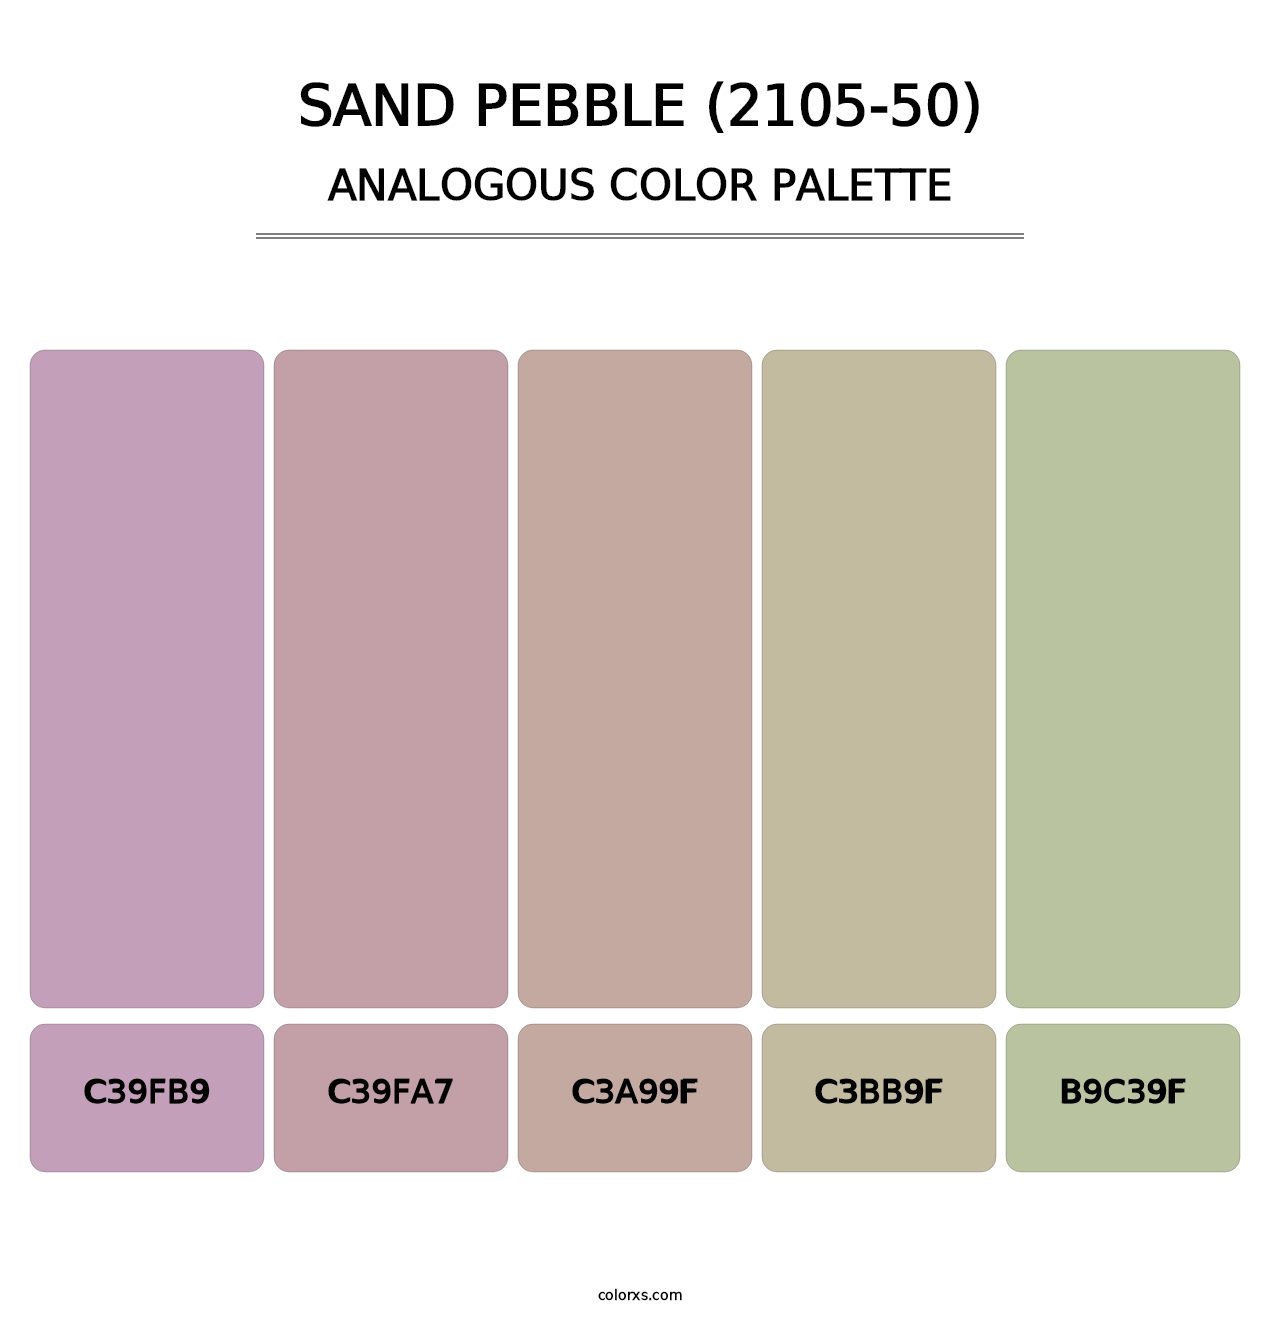 Sand Pebble (2105-50) - Analogous Color Palette